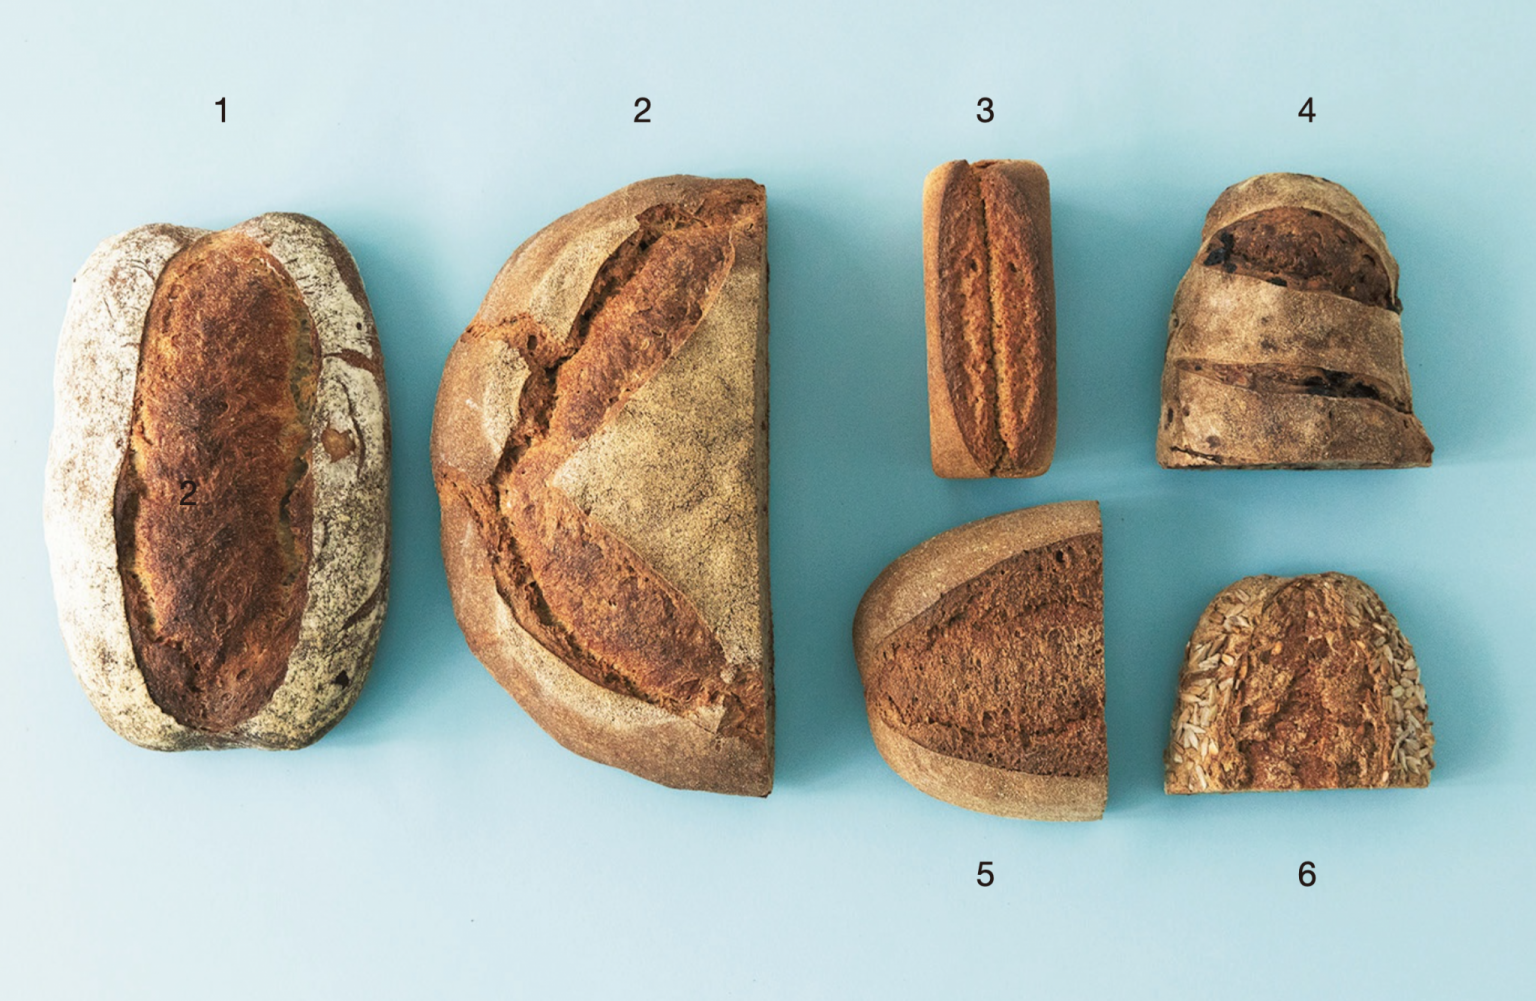 おまかせ便（5,000円セット、税込）。1.白いパン、2.茶色いパン、3.パンブリオッシュ、4.くるみとレーズンのパン、5.黒いパン、6.ひまわりのパン。葡萄種とホップ種を使用した白いパンは食パンのよう。パンブリオッシュは地元の〈あすなろファーミング〉のバターを使用する贅沢さ。茶色いパンは自家製粉20%のカンパーニュ。黒いパンは自家製粉した全粒粉100%。